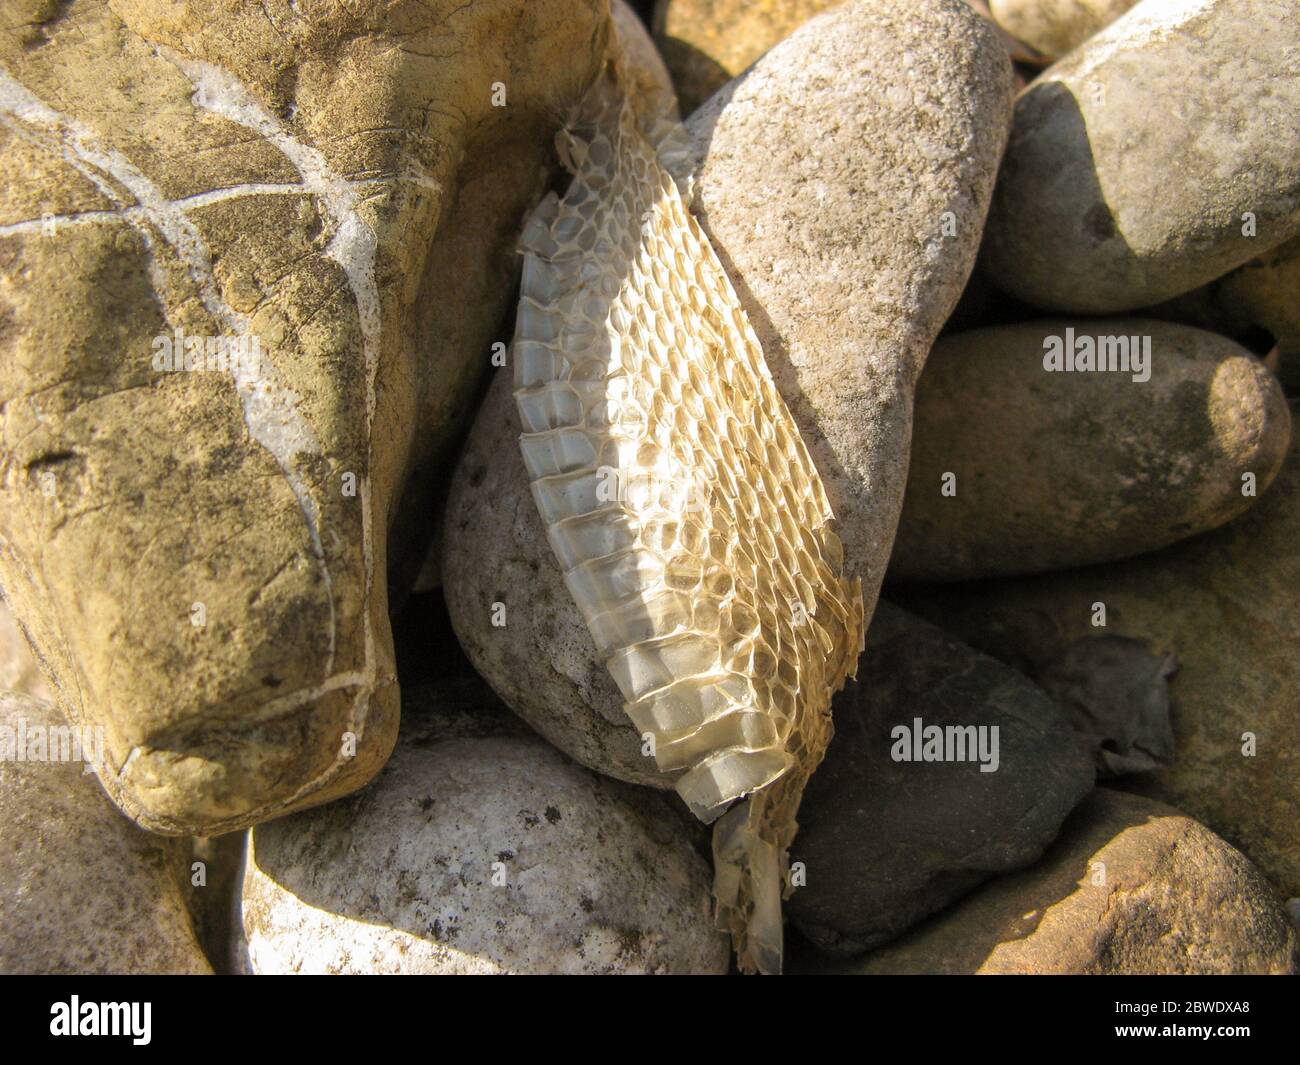 Slough serpent sur fond de pierre, peau de serpent. Gros plan sur SnakeSkin en été. Peau sèche de serpent sur la surface rocheuse.texture naturelle de la peau.Animal Banque D'Images